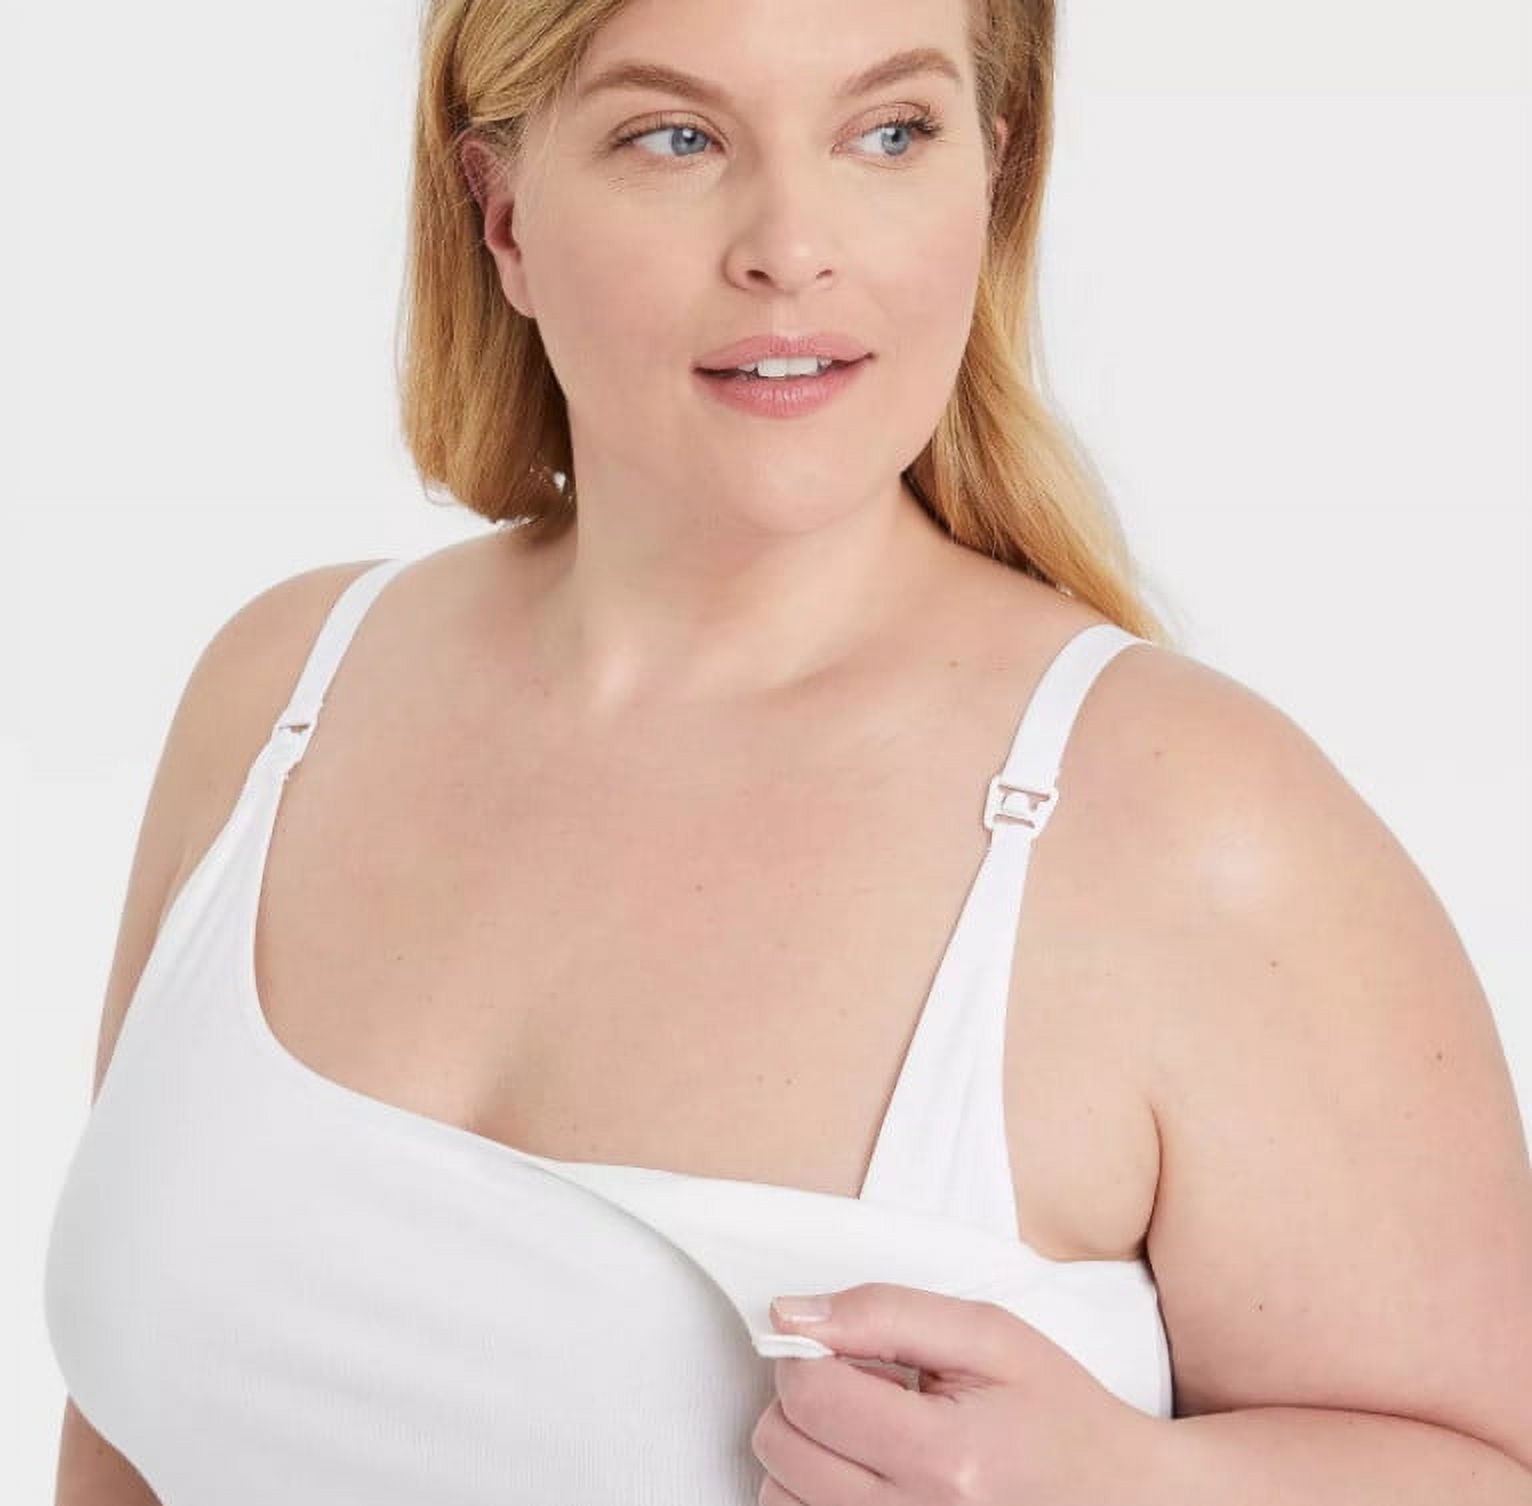 Gilligan O'Malley Women's Plus Size Nursing Cami - White - 2XL - New 